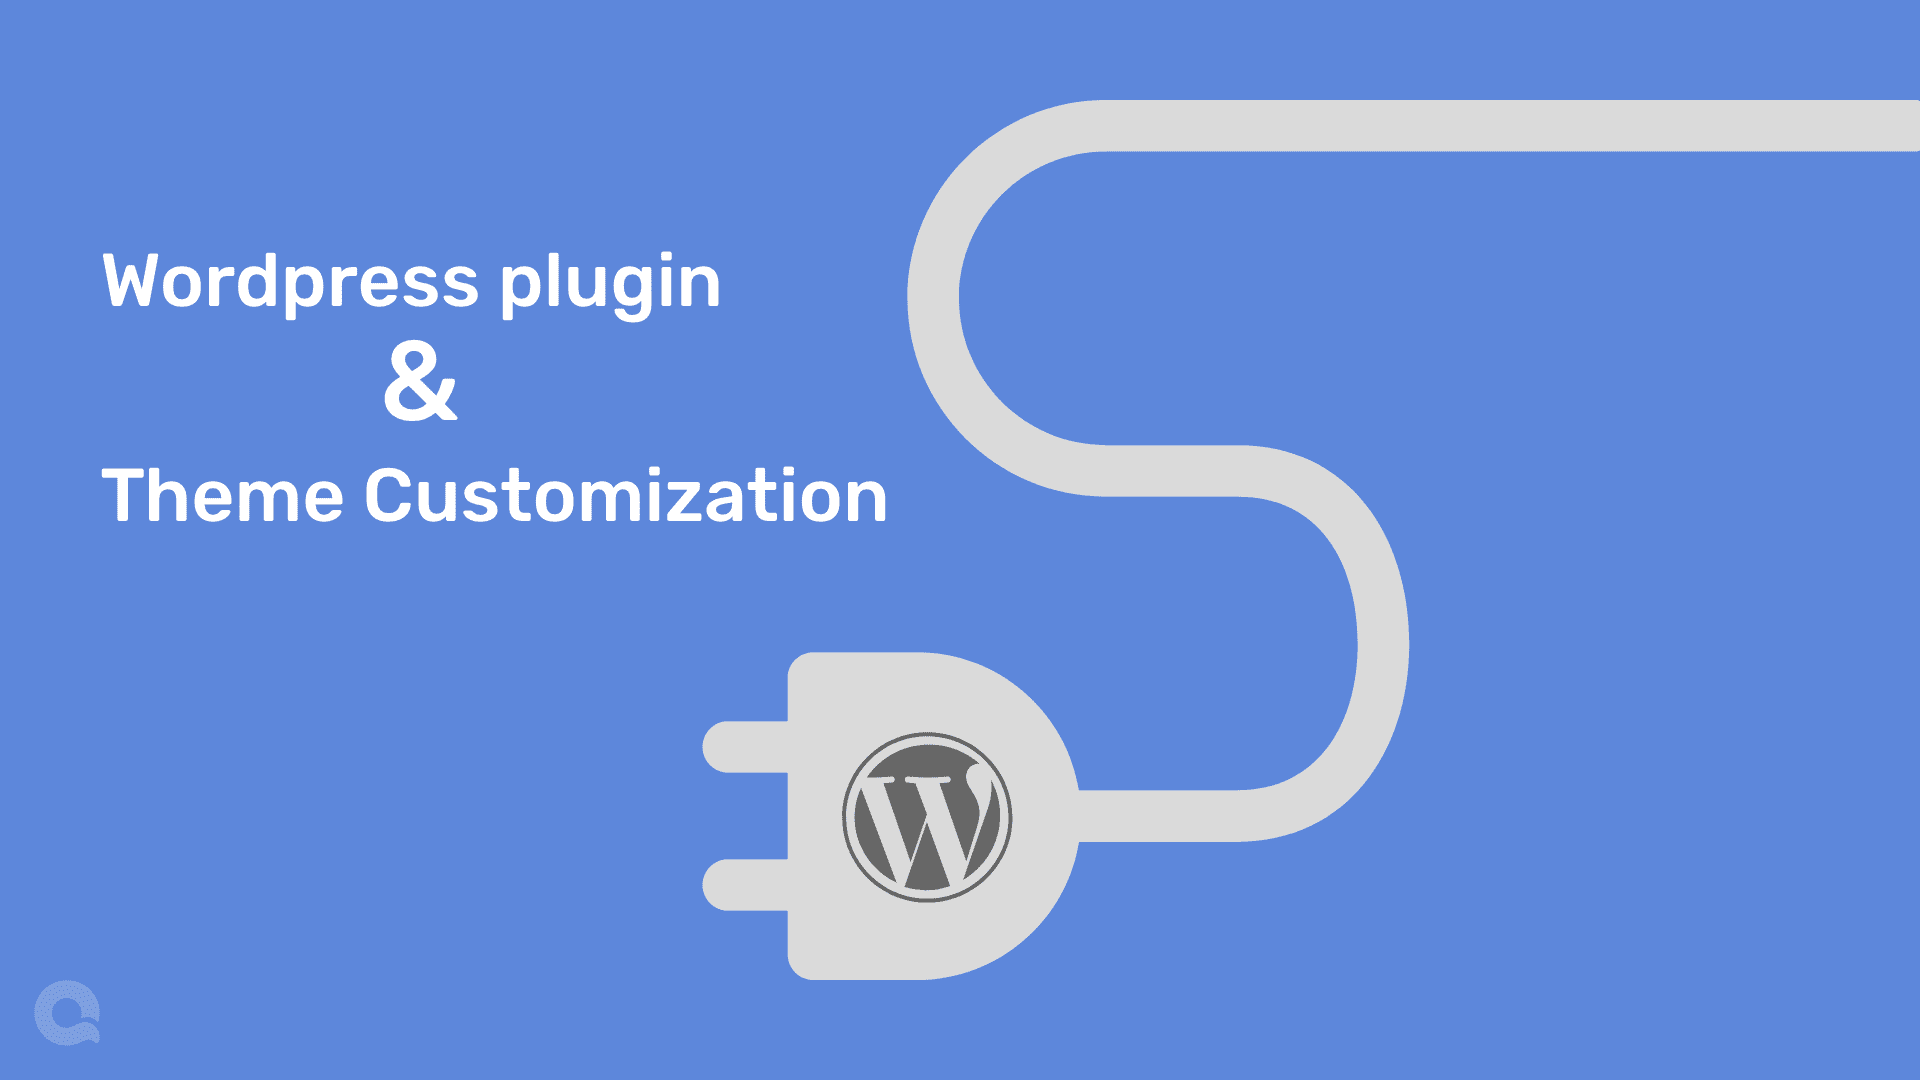 All about wordpress plugin & theme customization